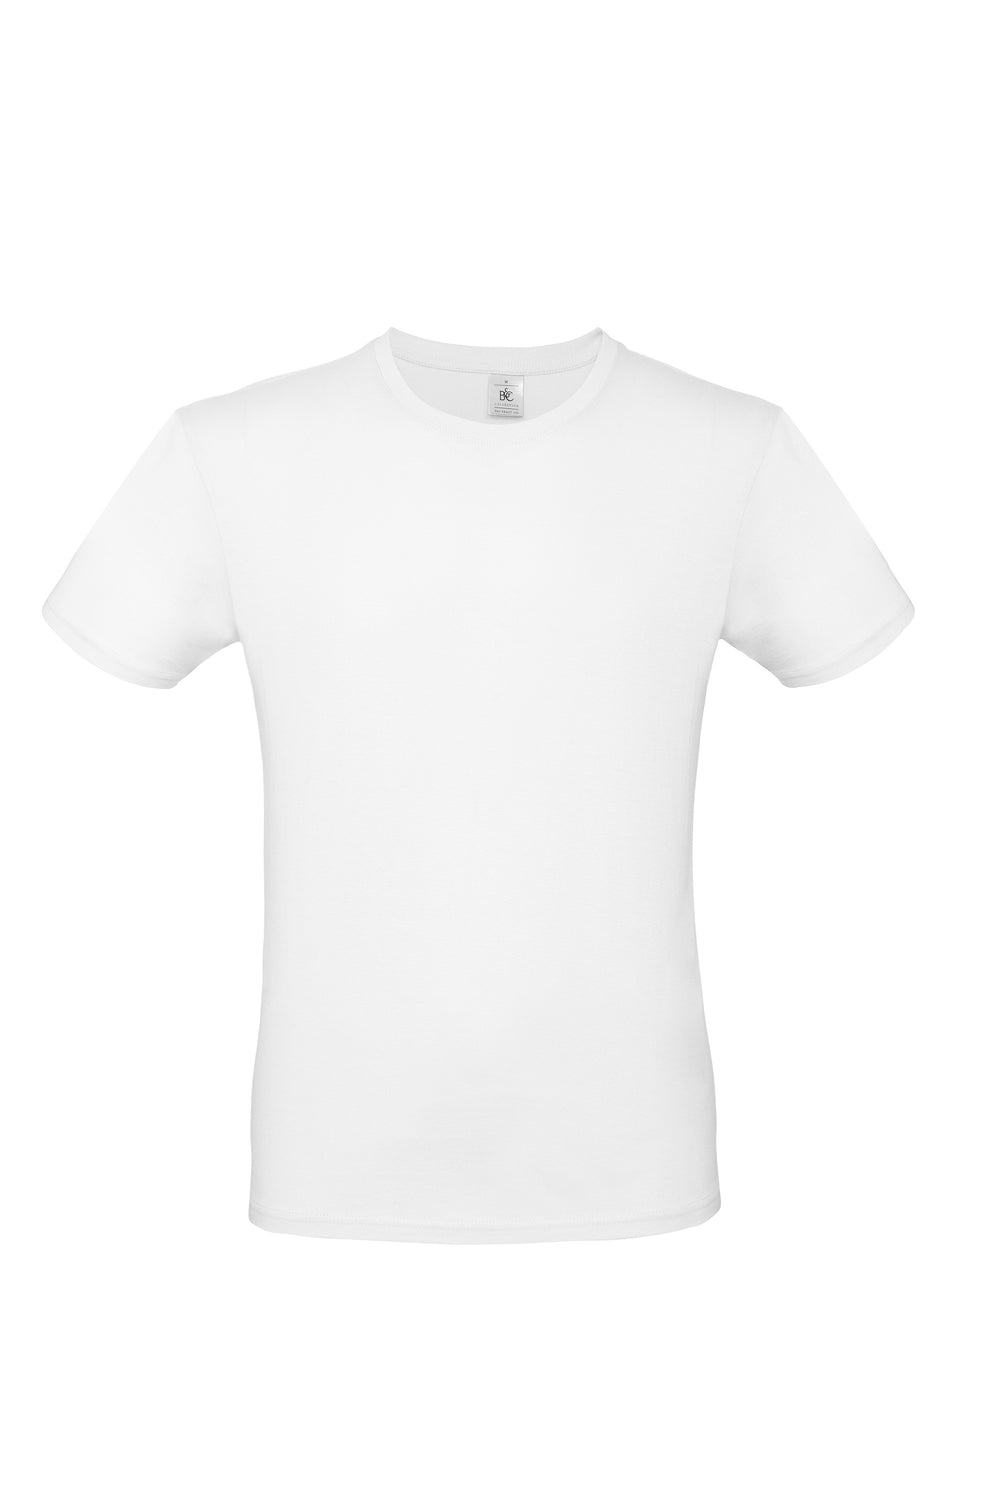 T-Shirt uomo B&C, 100% cotone, 145 grammi, colore bianco, ideale per la personalizzazione con logo o immagine